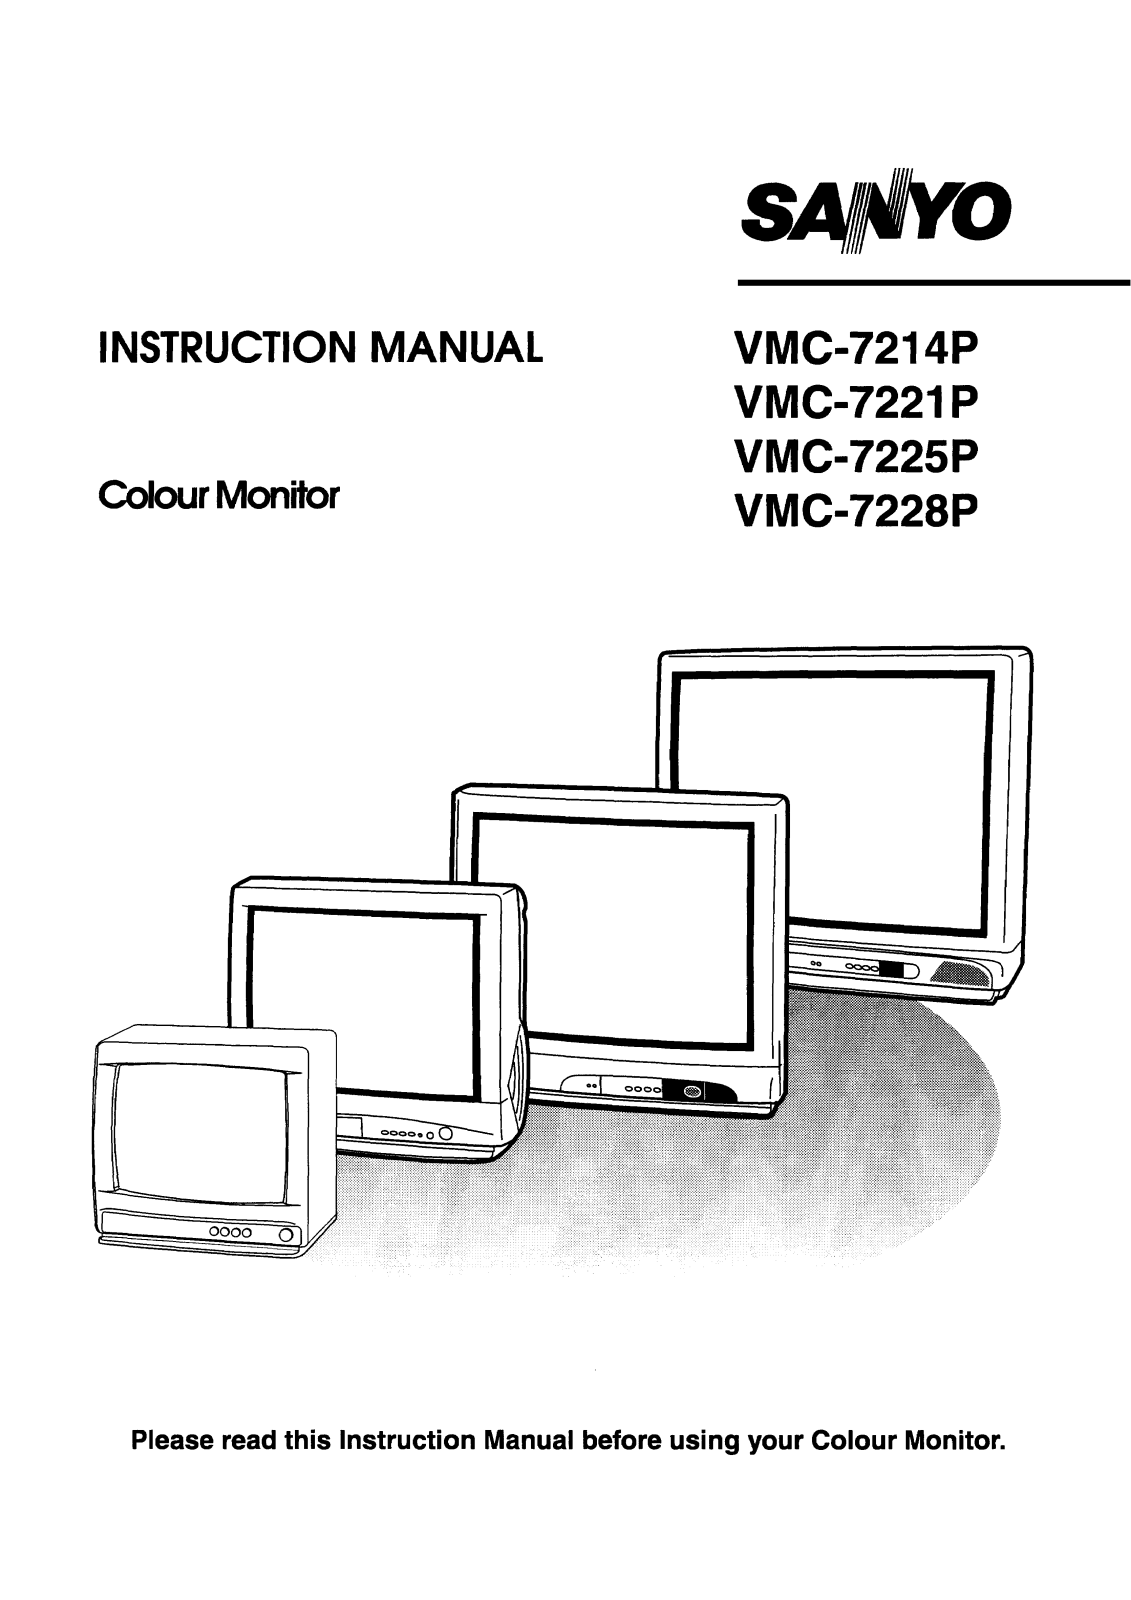 Sanyo VMC-7214P, VMC-7221P, VMC-7225P, VMC-7228P Instruction Manual